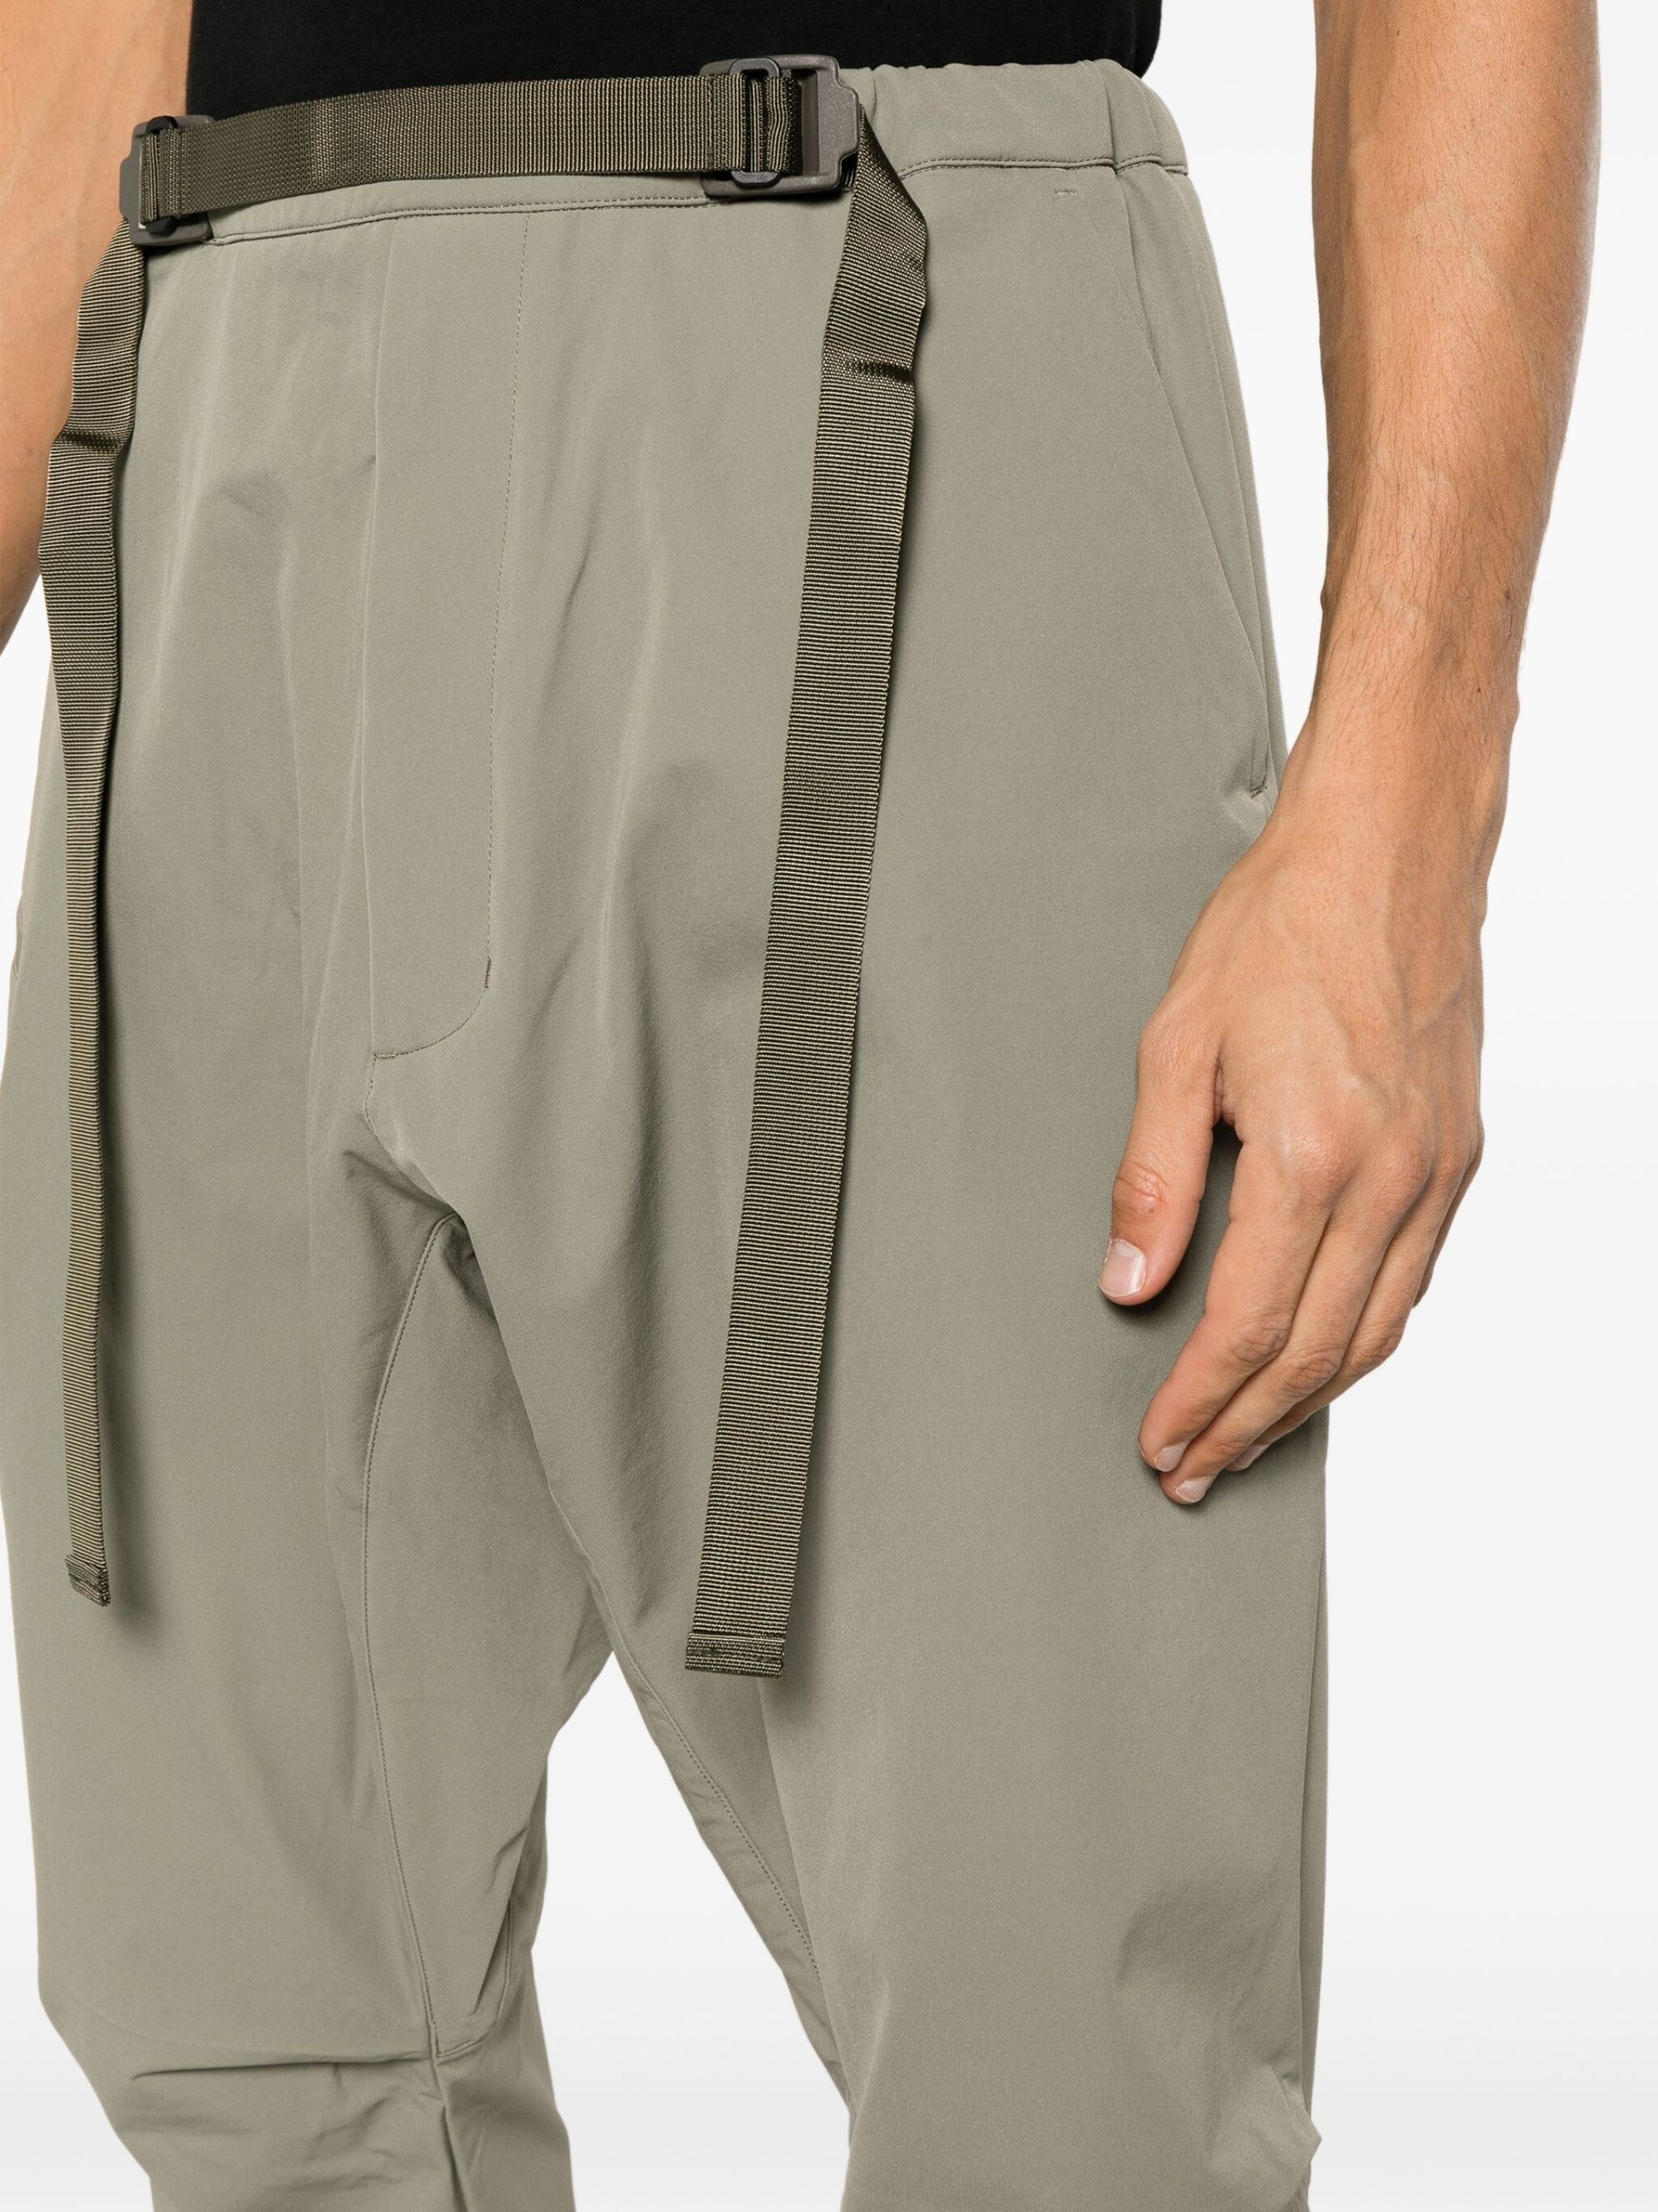 Green Schoeller Dryskin Drawcord Trousers - 5